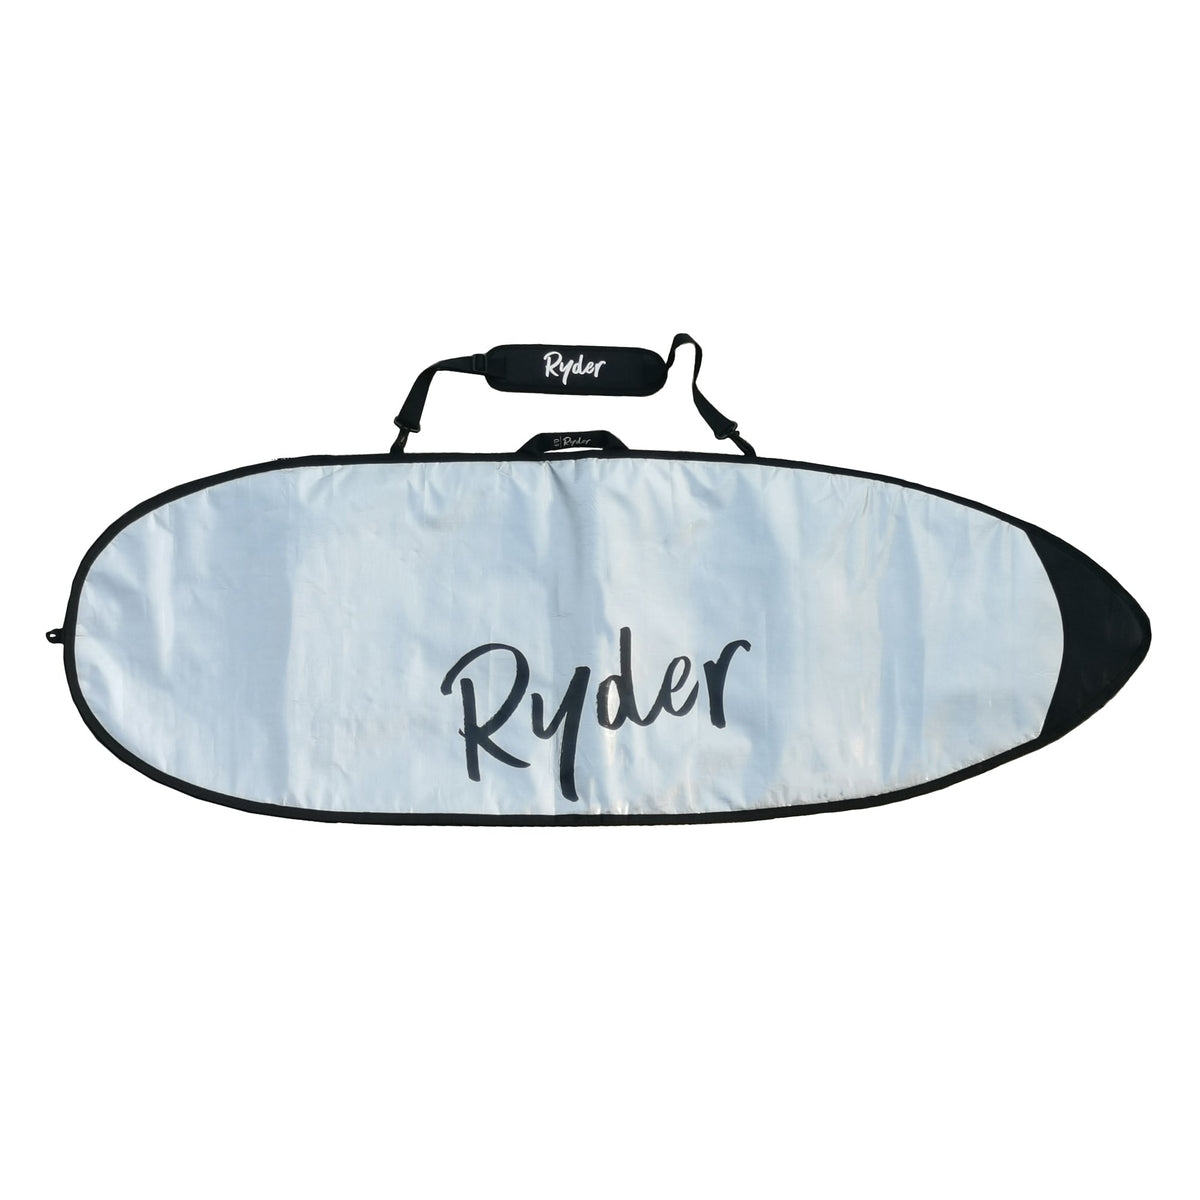 Ryder Surfboard Cover - 6ft - Ryder Boards